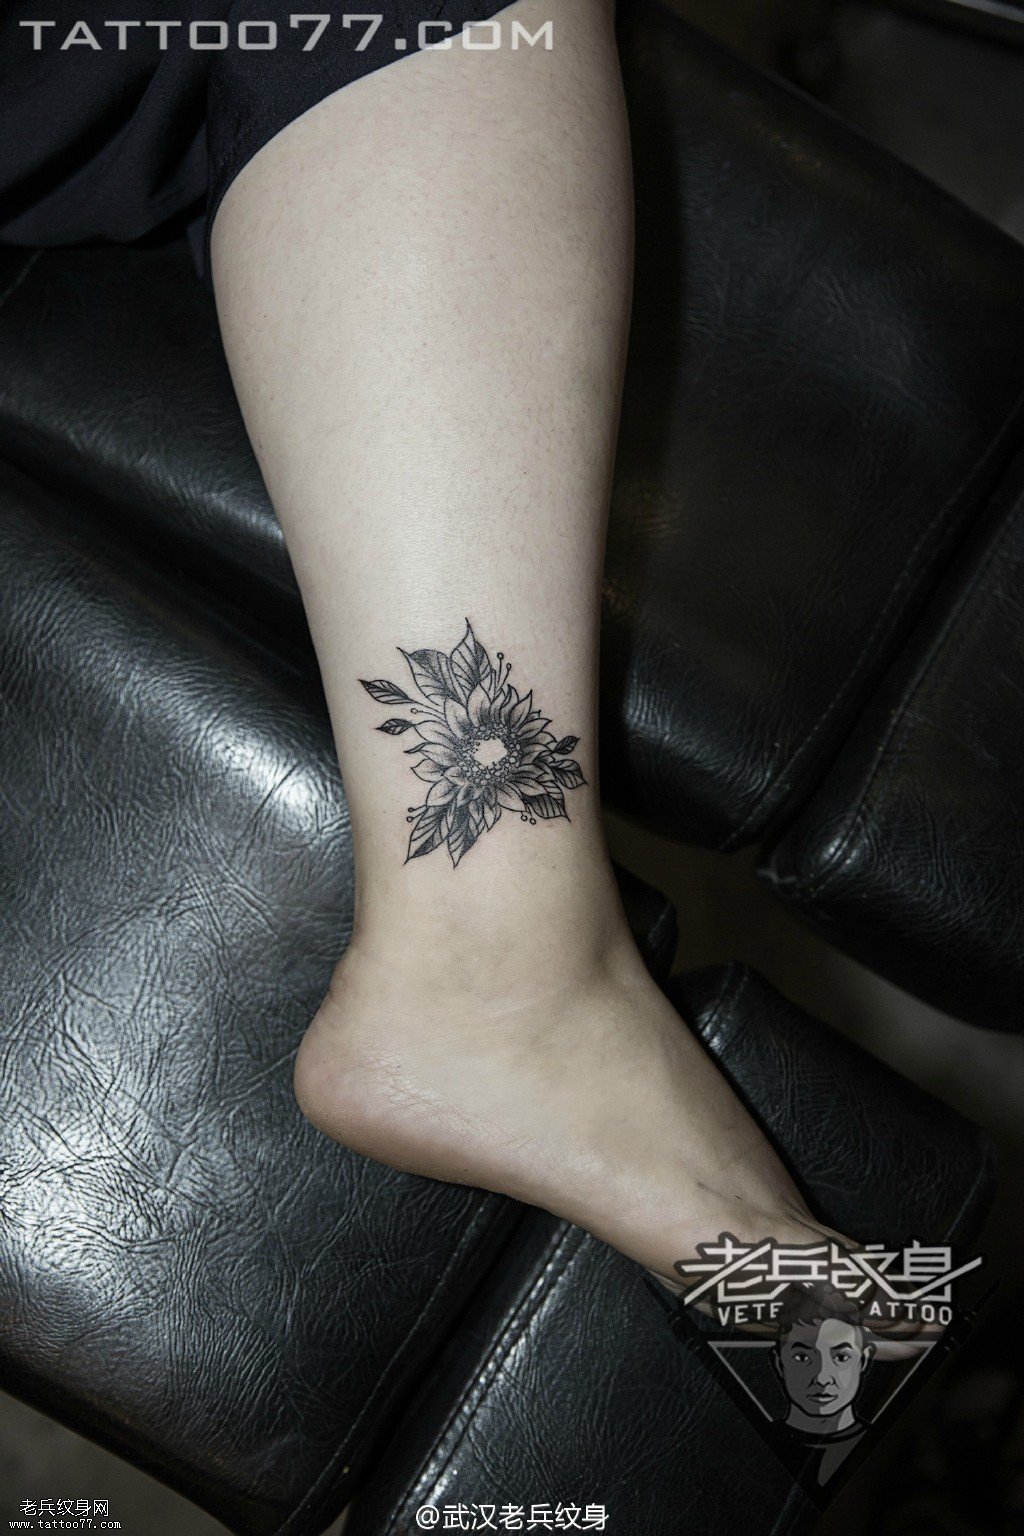 脚踝向日葵纹身图案作品